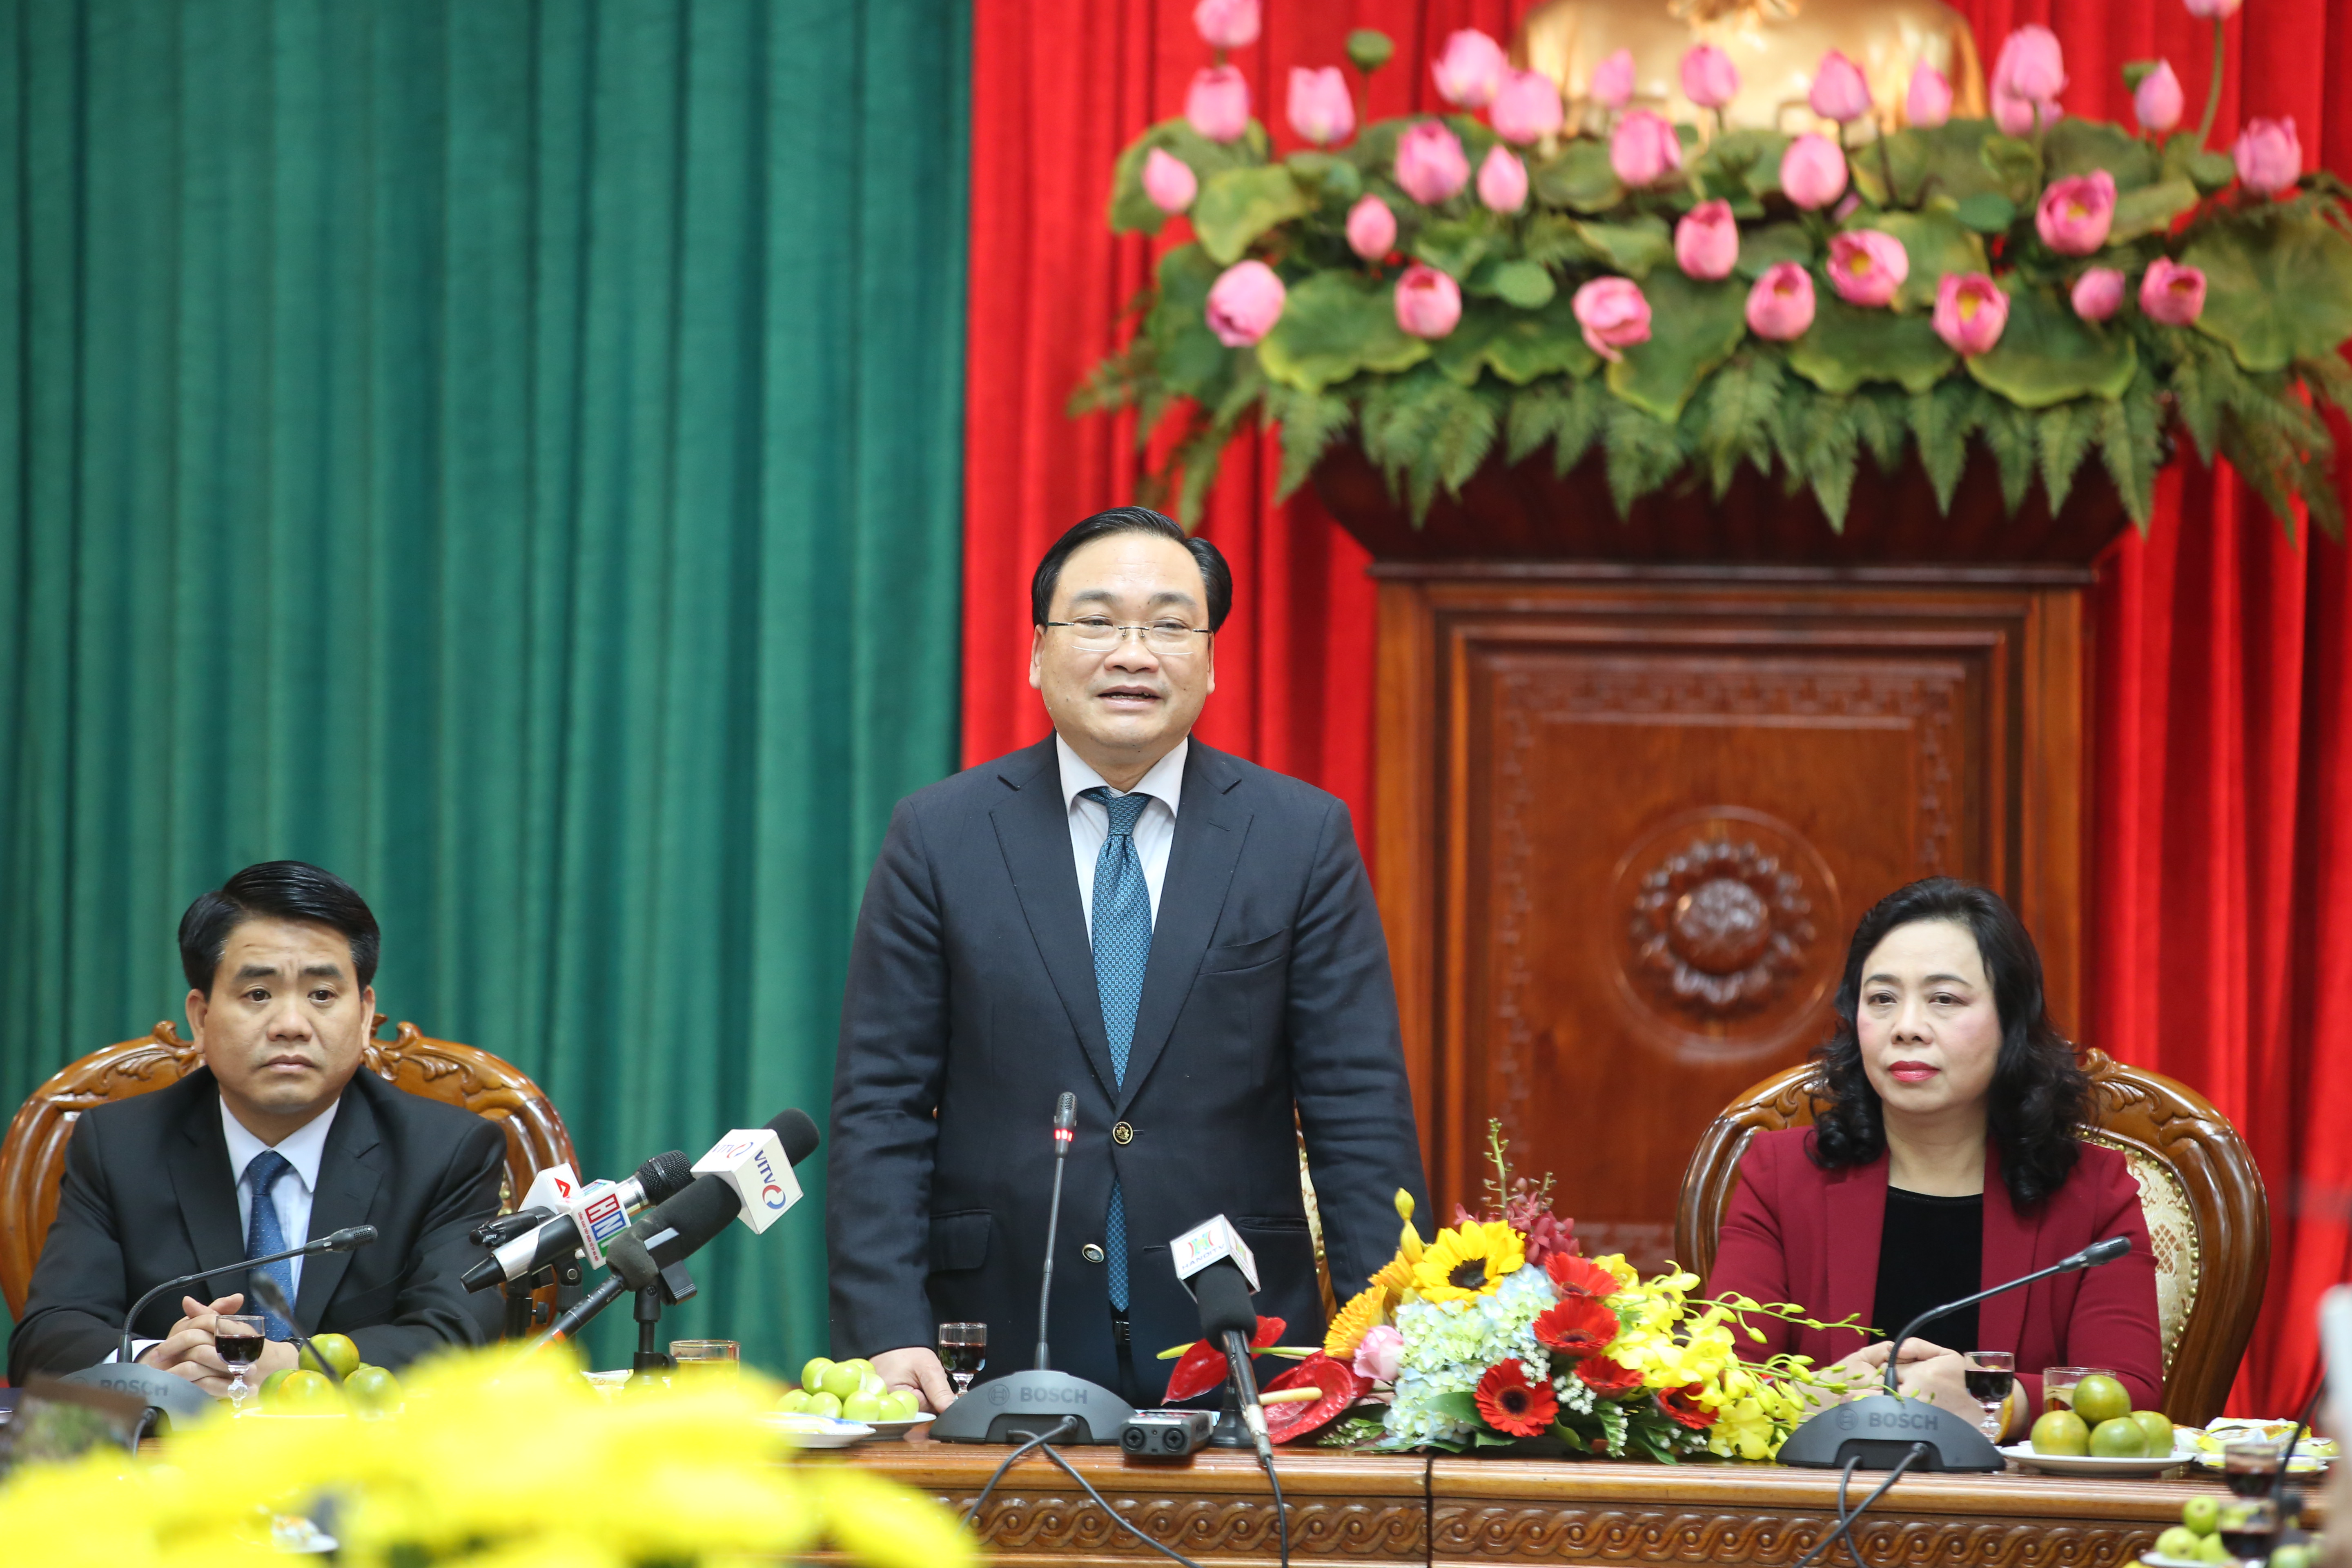 Bí thư Thành ủy Hà Nội phát biểu trước báo chí - Ảnh: Ngọc Thắng